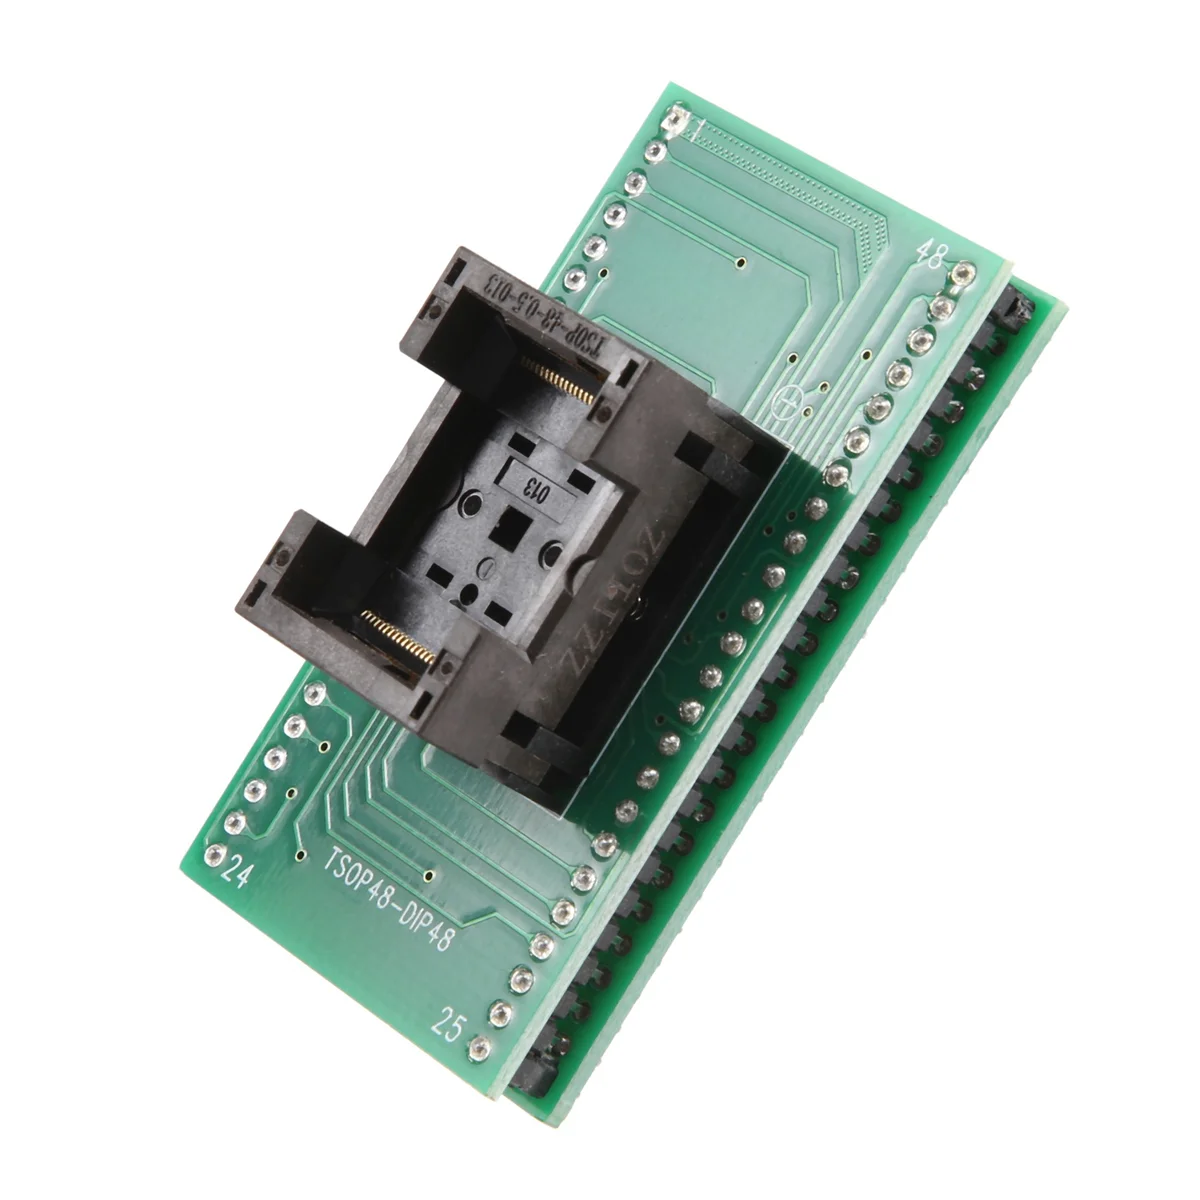 

TSOP48 To DIP48 Adapter TSOP48 Socket for RT809F RT809H & for XELTEK USB Mini Calculator Programmer